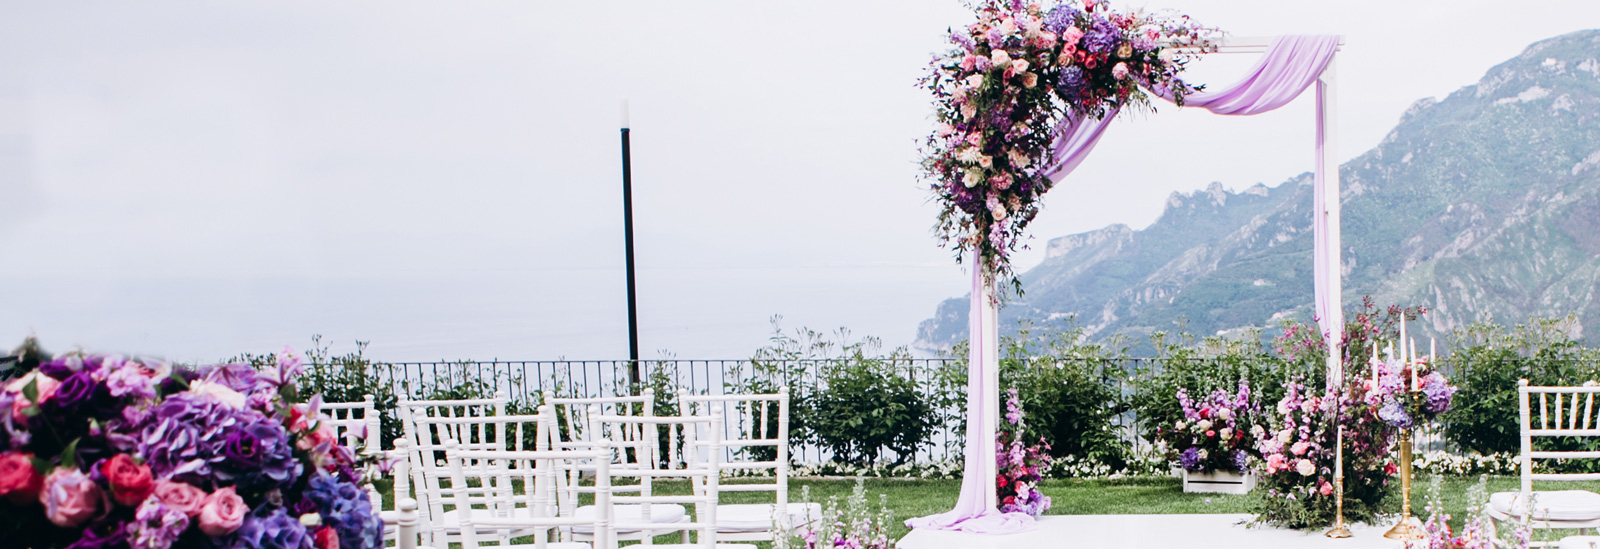 30 + способов спланировать потрясающую пурпурно-серую свадьбу